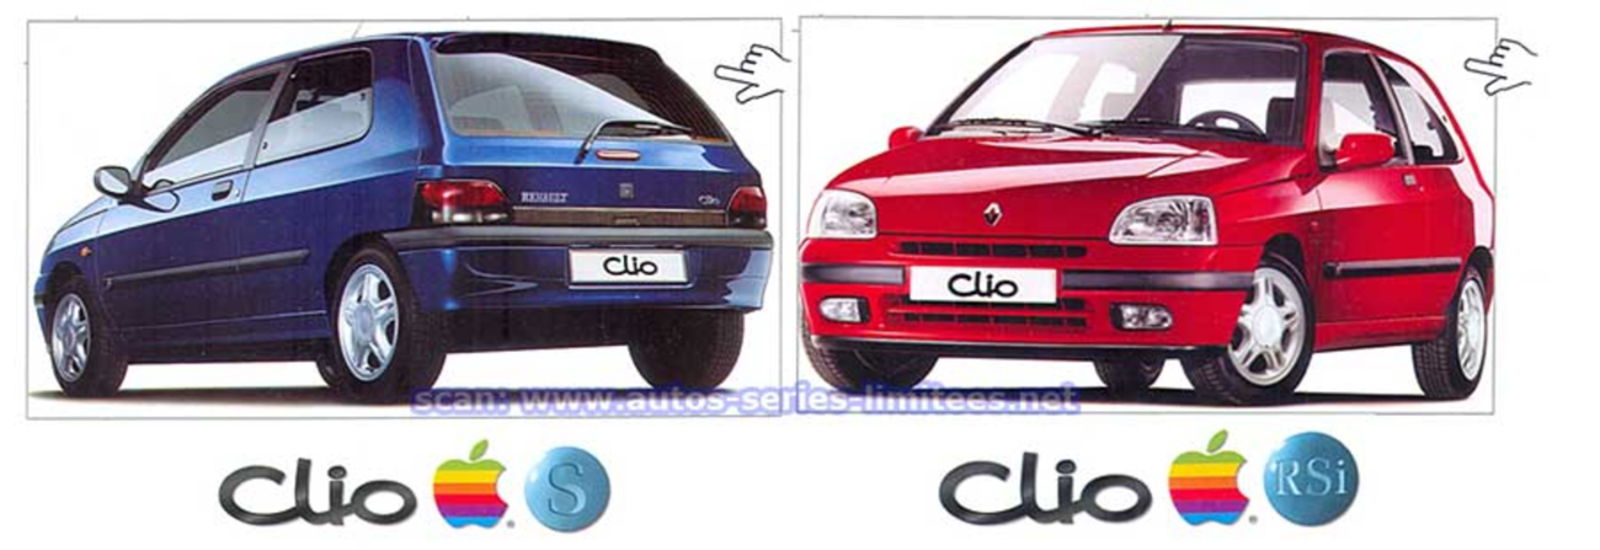 Clio Apple